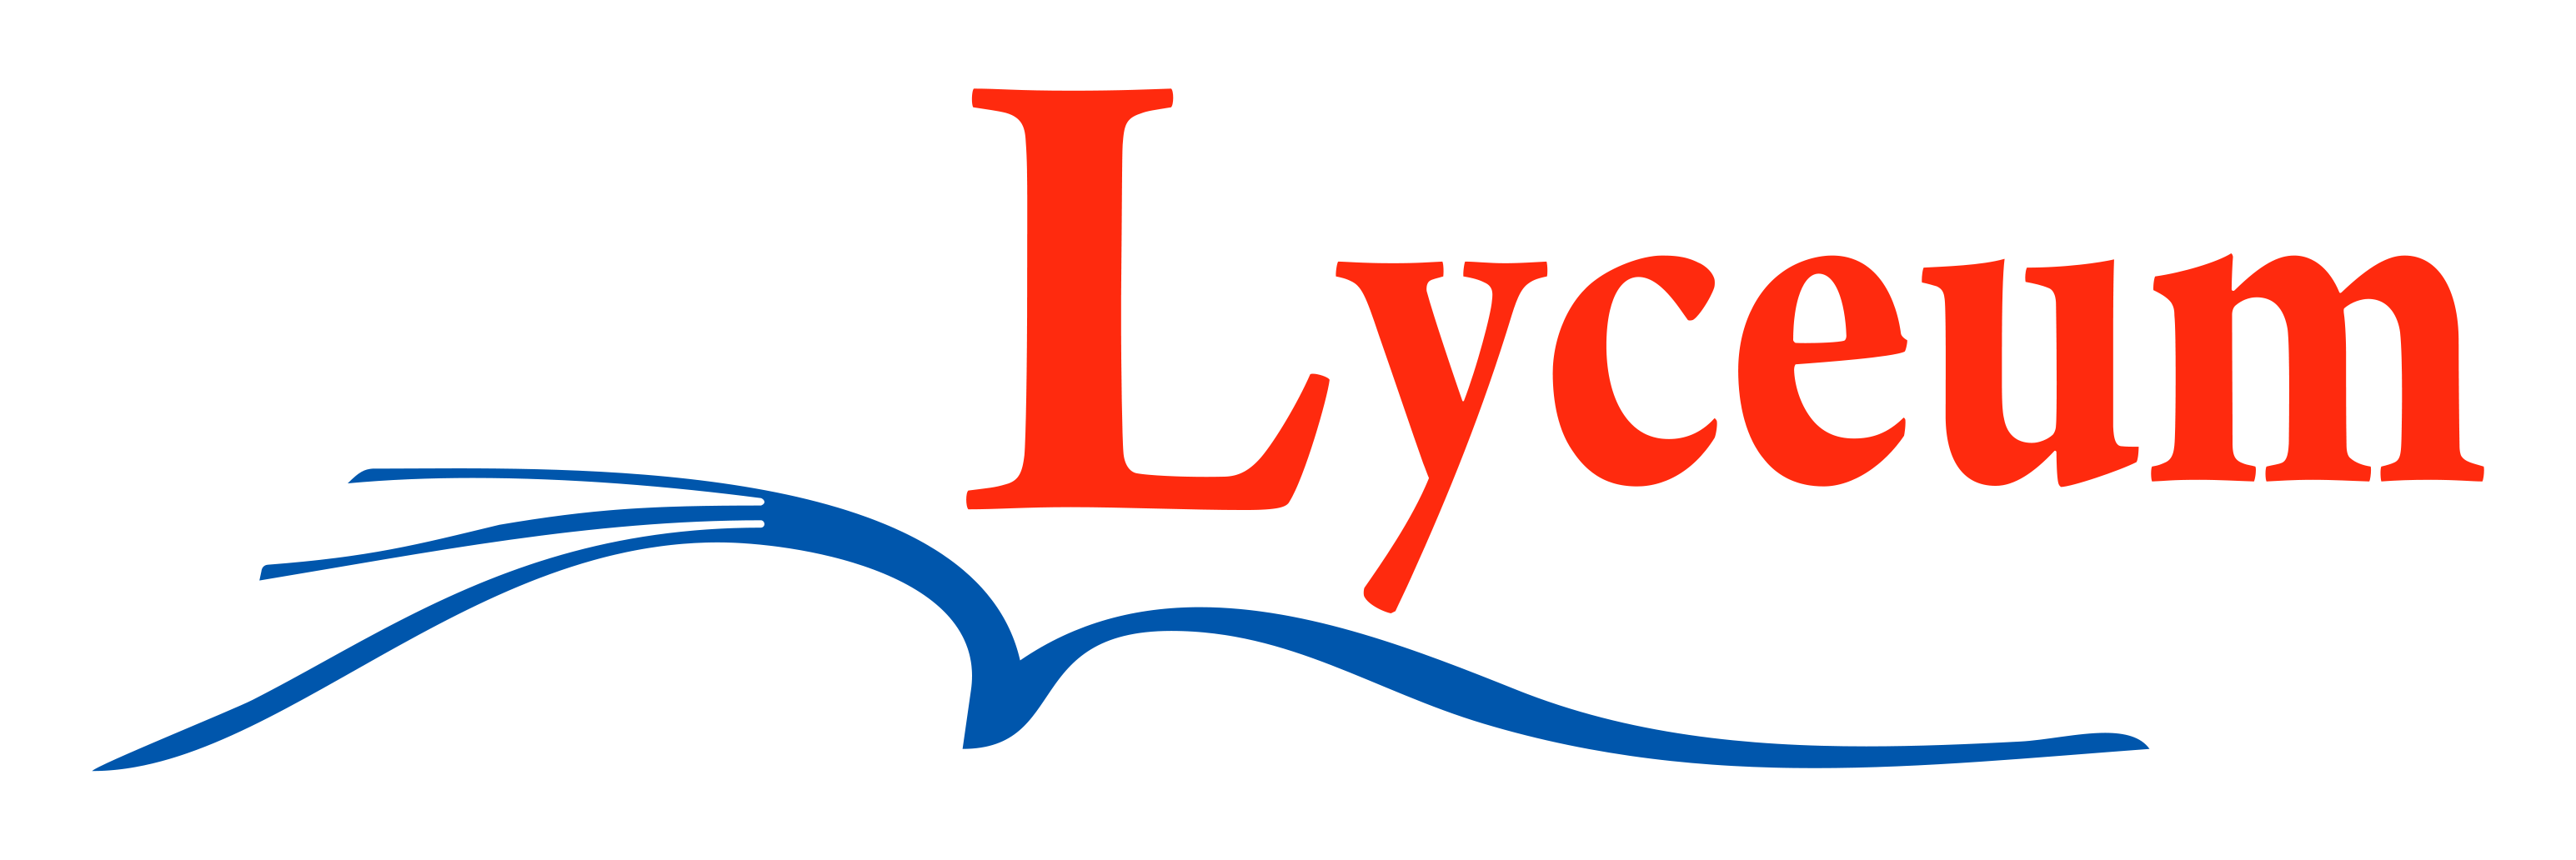 Consultoria Lyceum